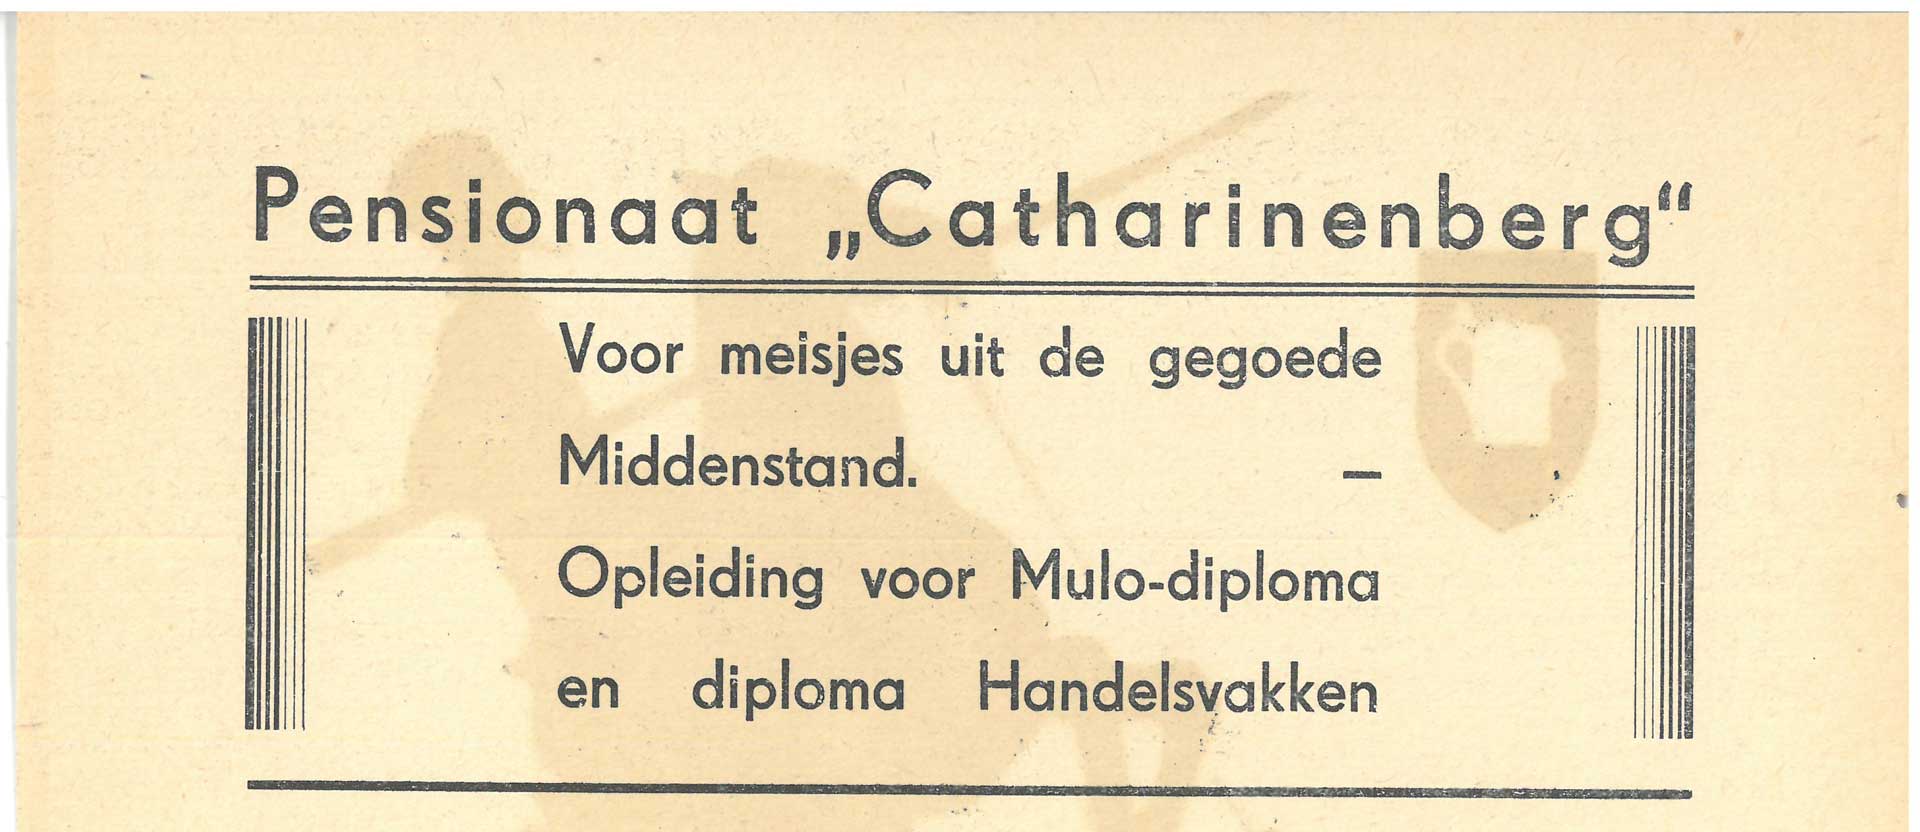 Advertentie van het pensionaaat Cathrinenberg op een flyer voor een toneelstuk in het openluchttheater in Oisterwijk (1939)